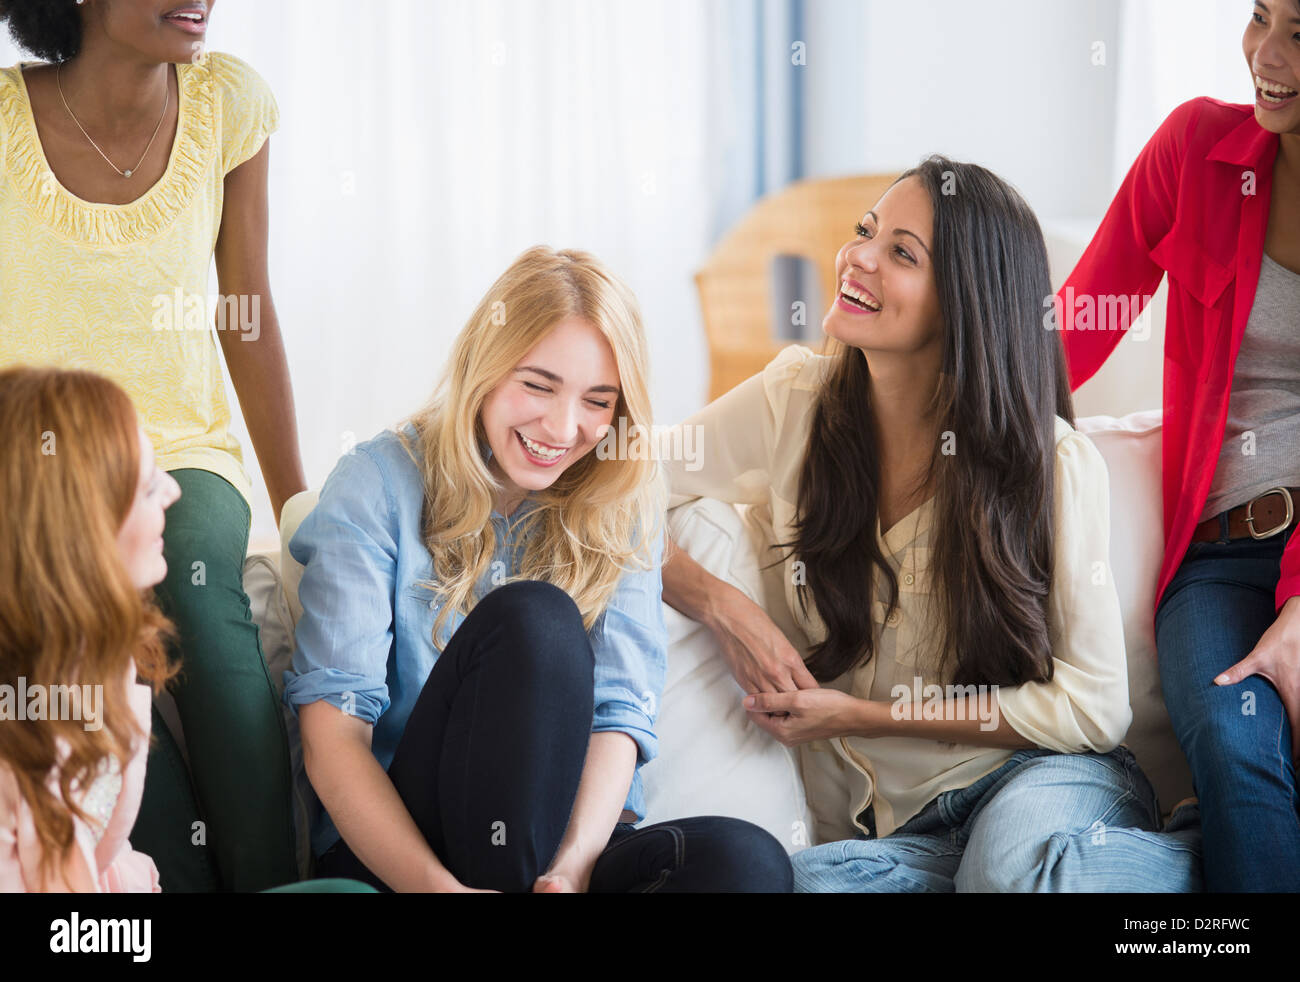 Smiling women talking on sofa Stock Photo